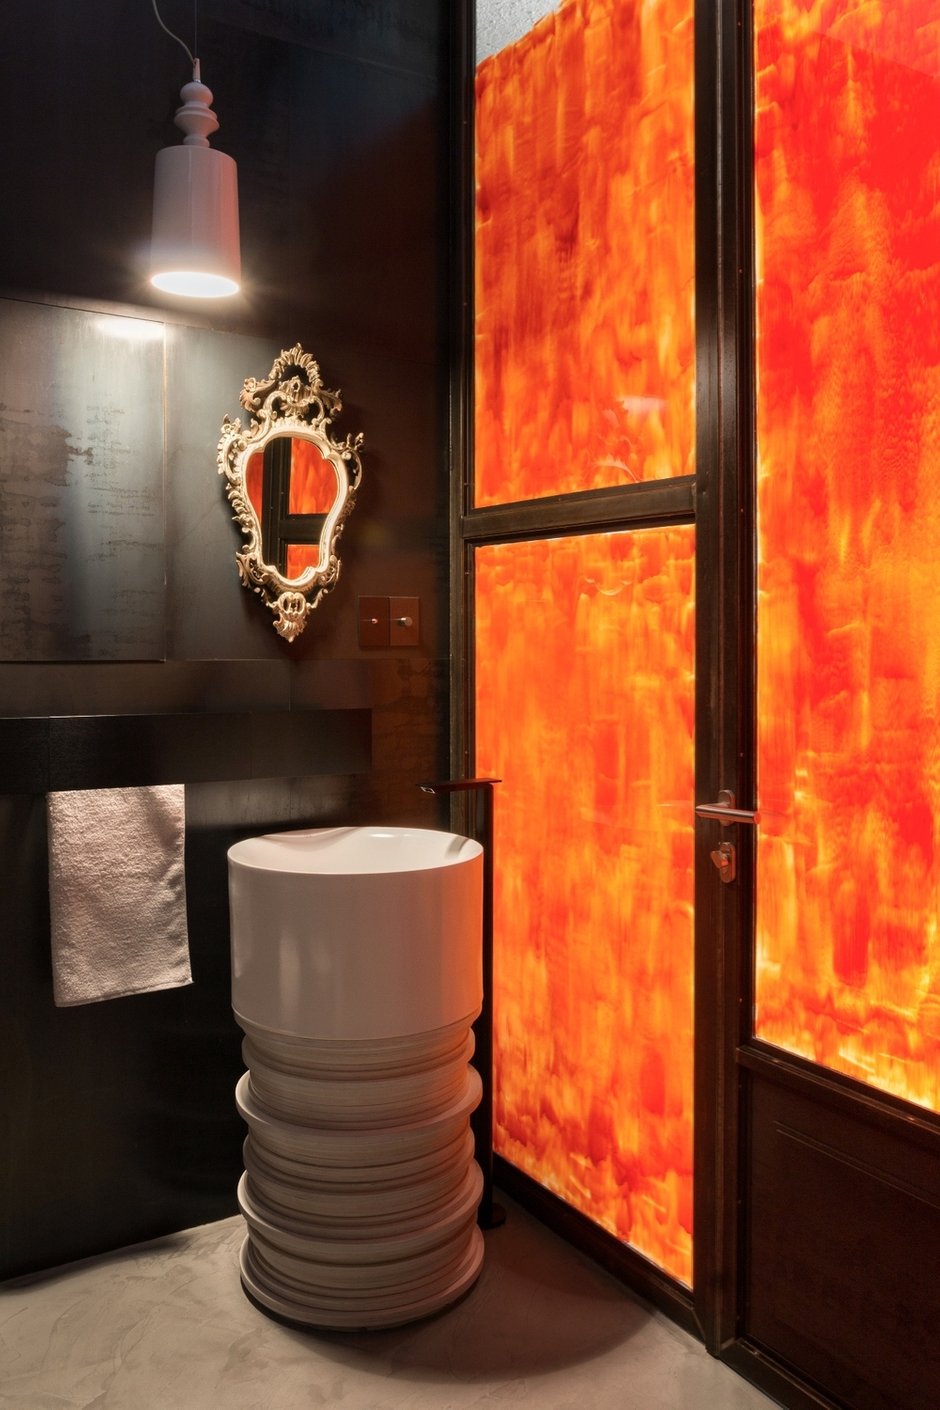 В ванной комнате использованы разные материалы: блестящая мелкоформатная плитка, черный металл и частично окрашенная в оранжевый цвет стеклянная перегородка, пропускающая солнечный свет в ванную.